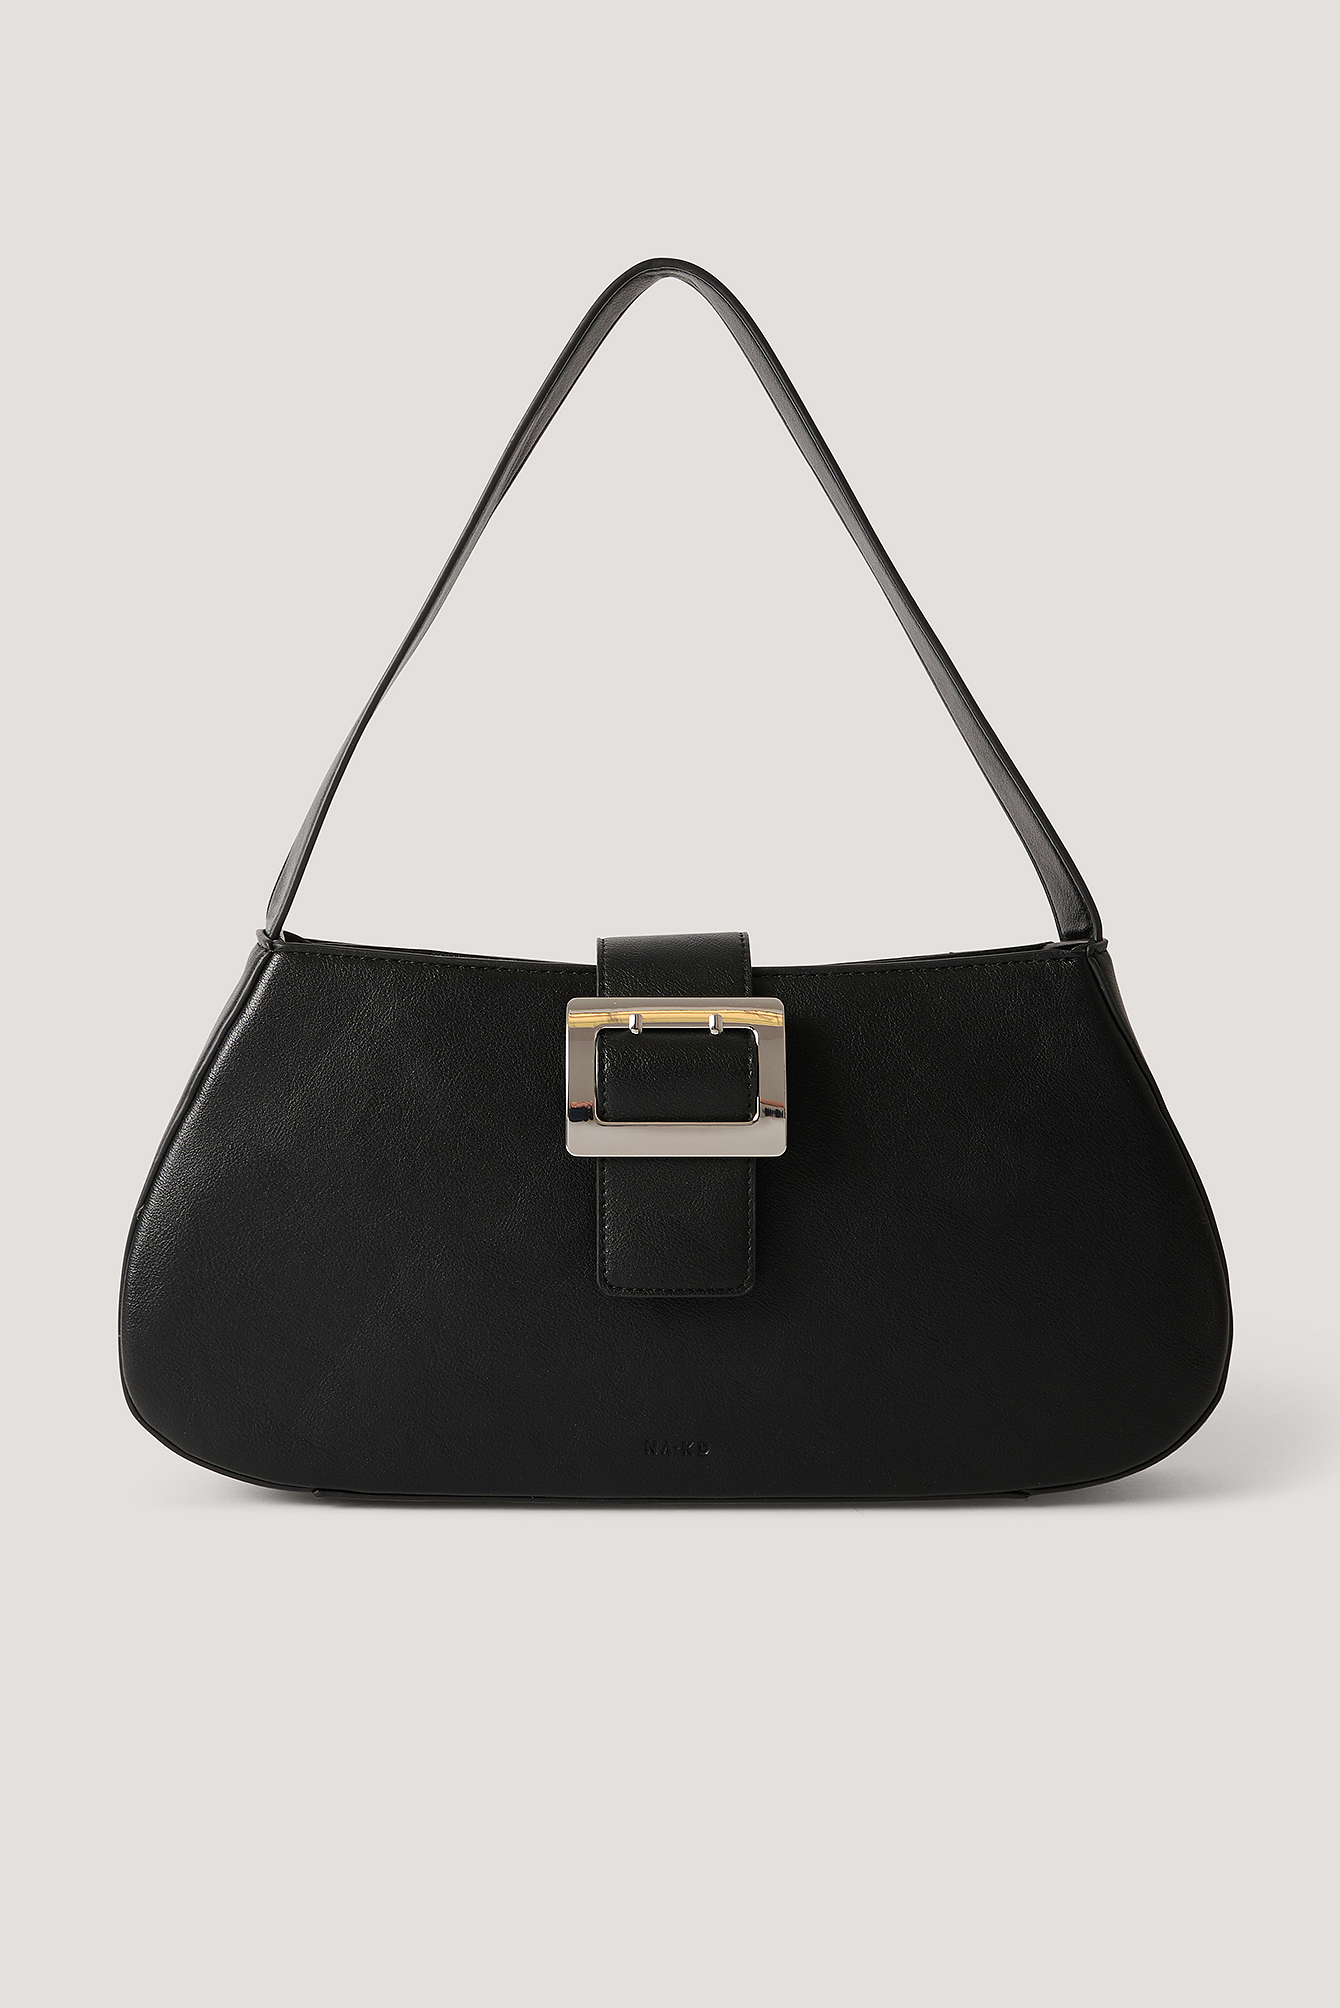 KNALLA Bag, black, white, Length: 15 ¾ Height: 18 ½. Find it